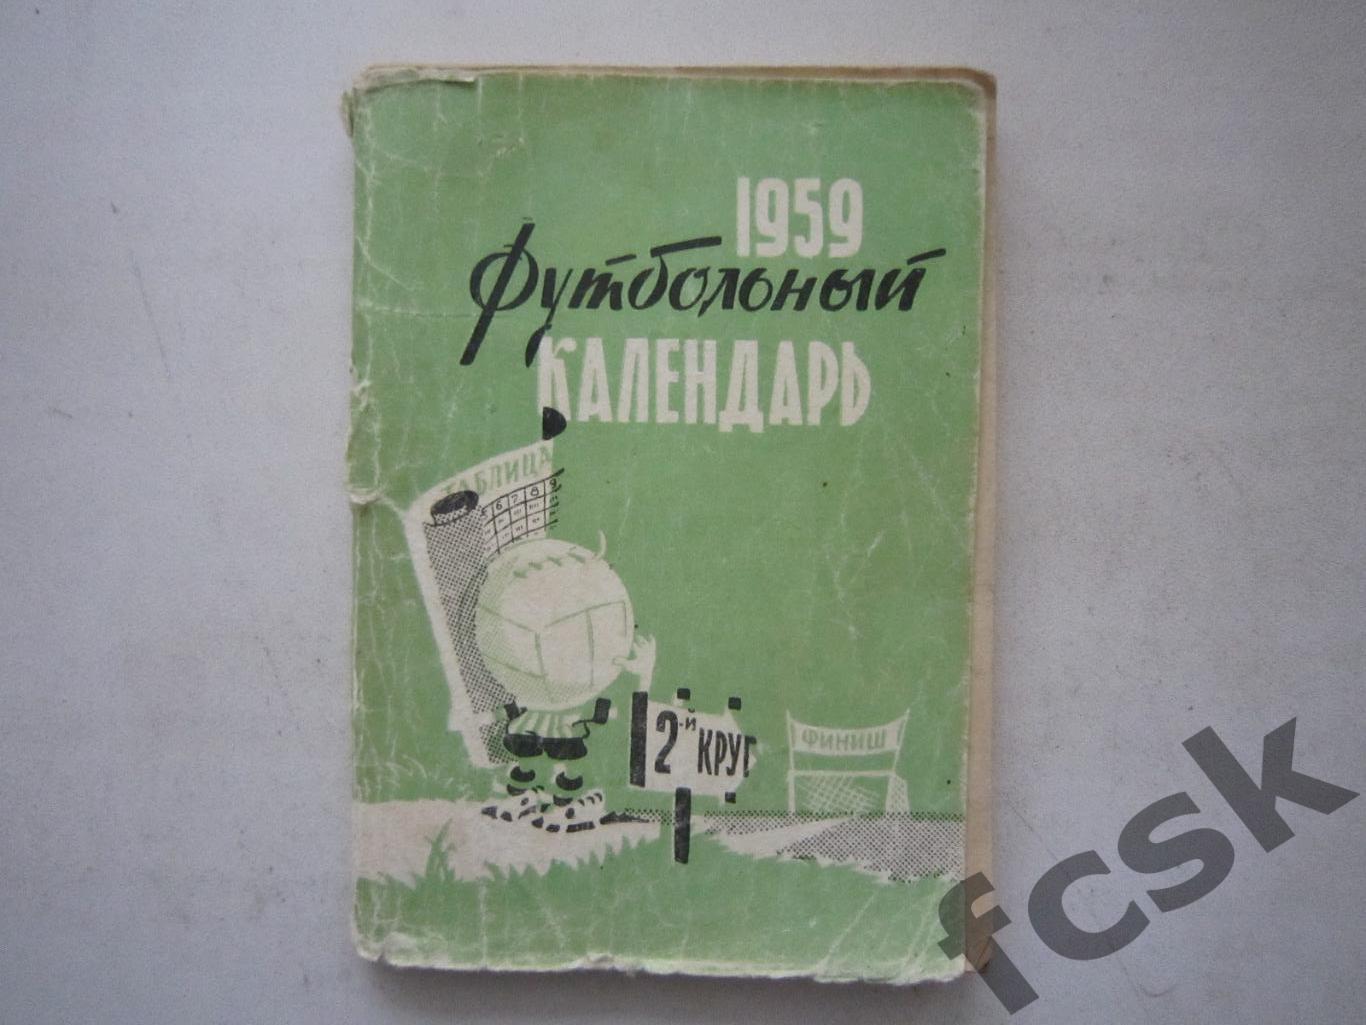 Московская правда 1959 2 круг (ав)